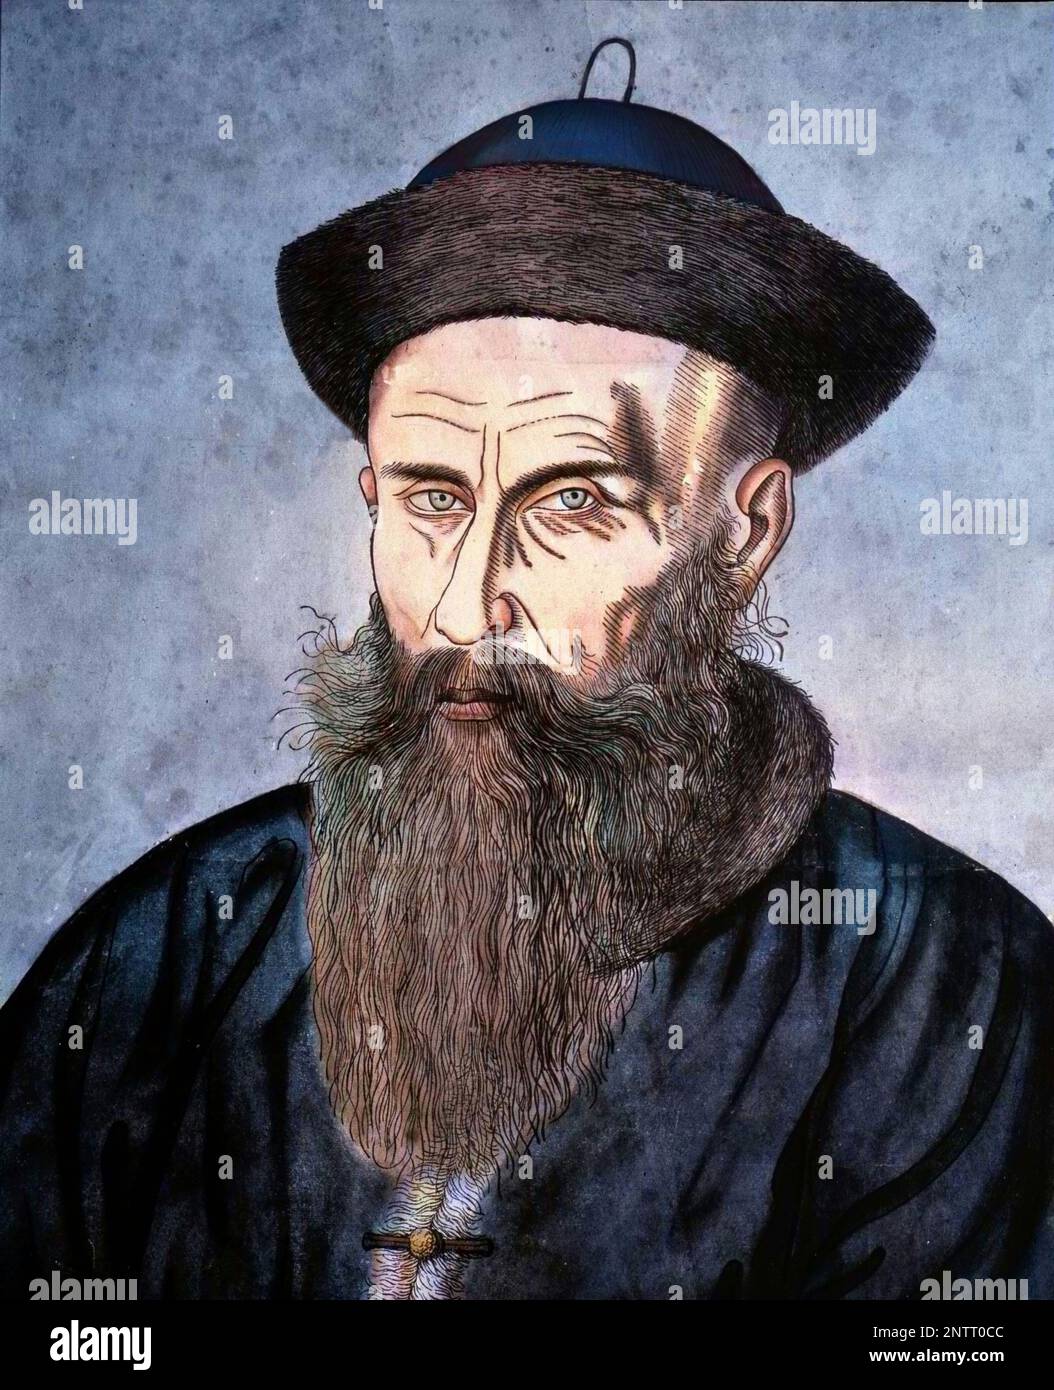 Adam Schall missionnaire et astronome jésuite allemand - Portrait chinois de Johann Adam Schall von Bell (1592 - 1666), missionnaire jésuite allemand qui dirigea l'observatoire astronomique de Pékin. Banque D'Images